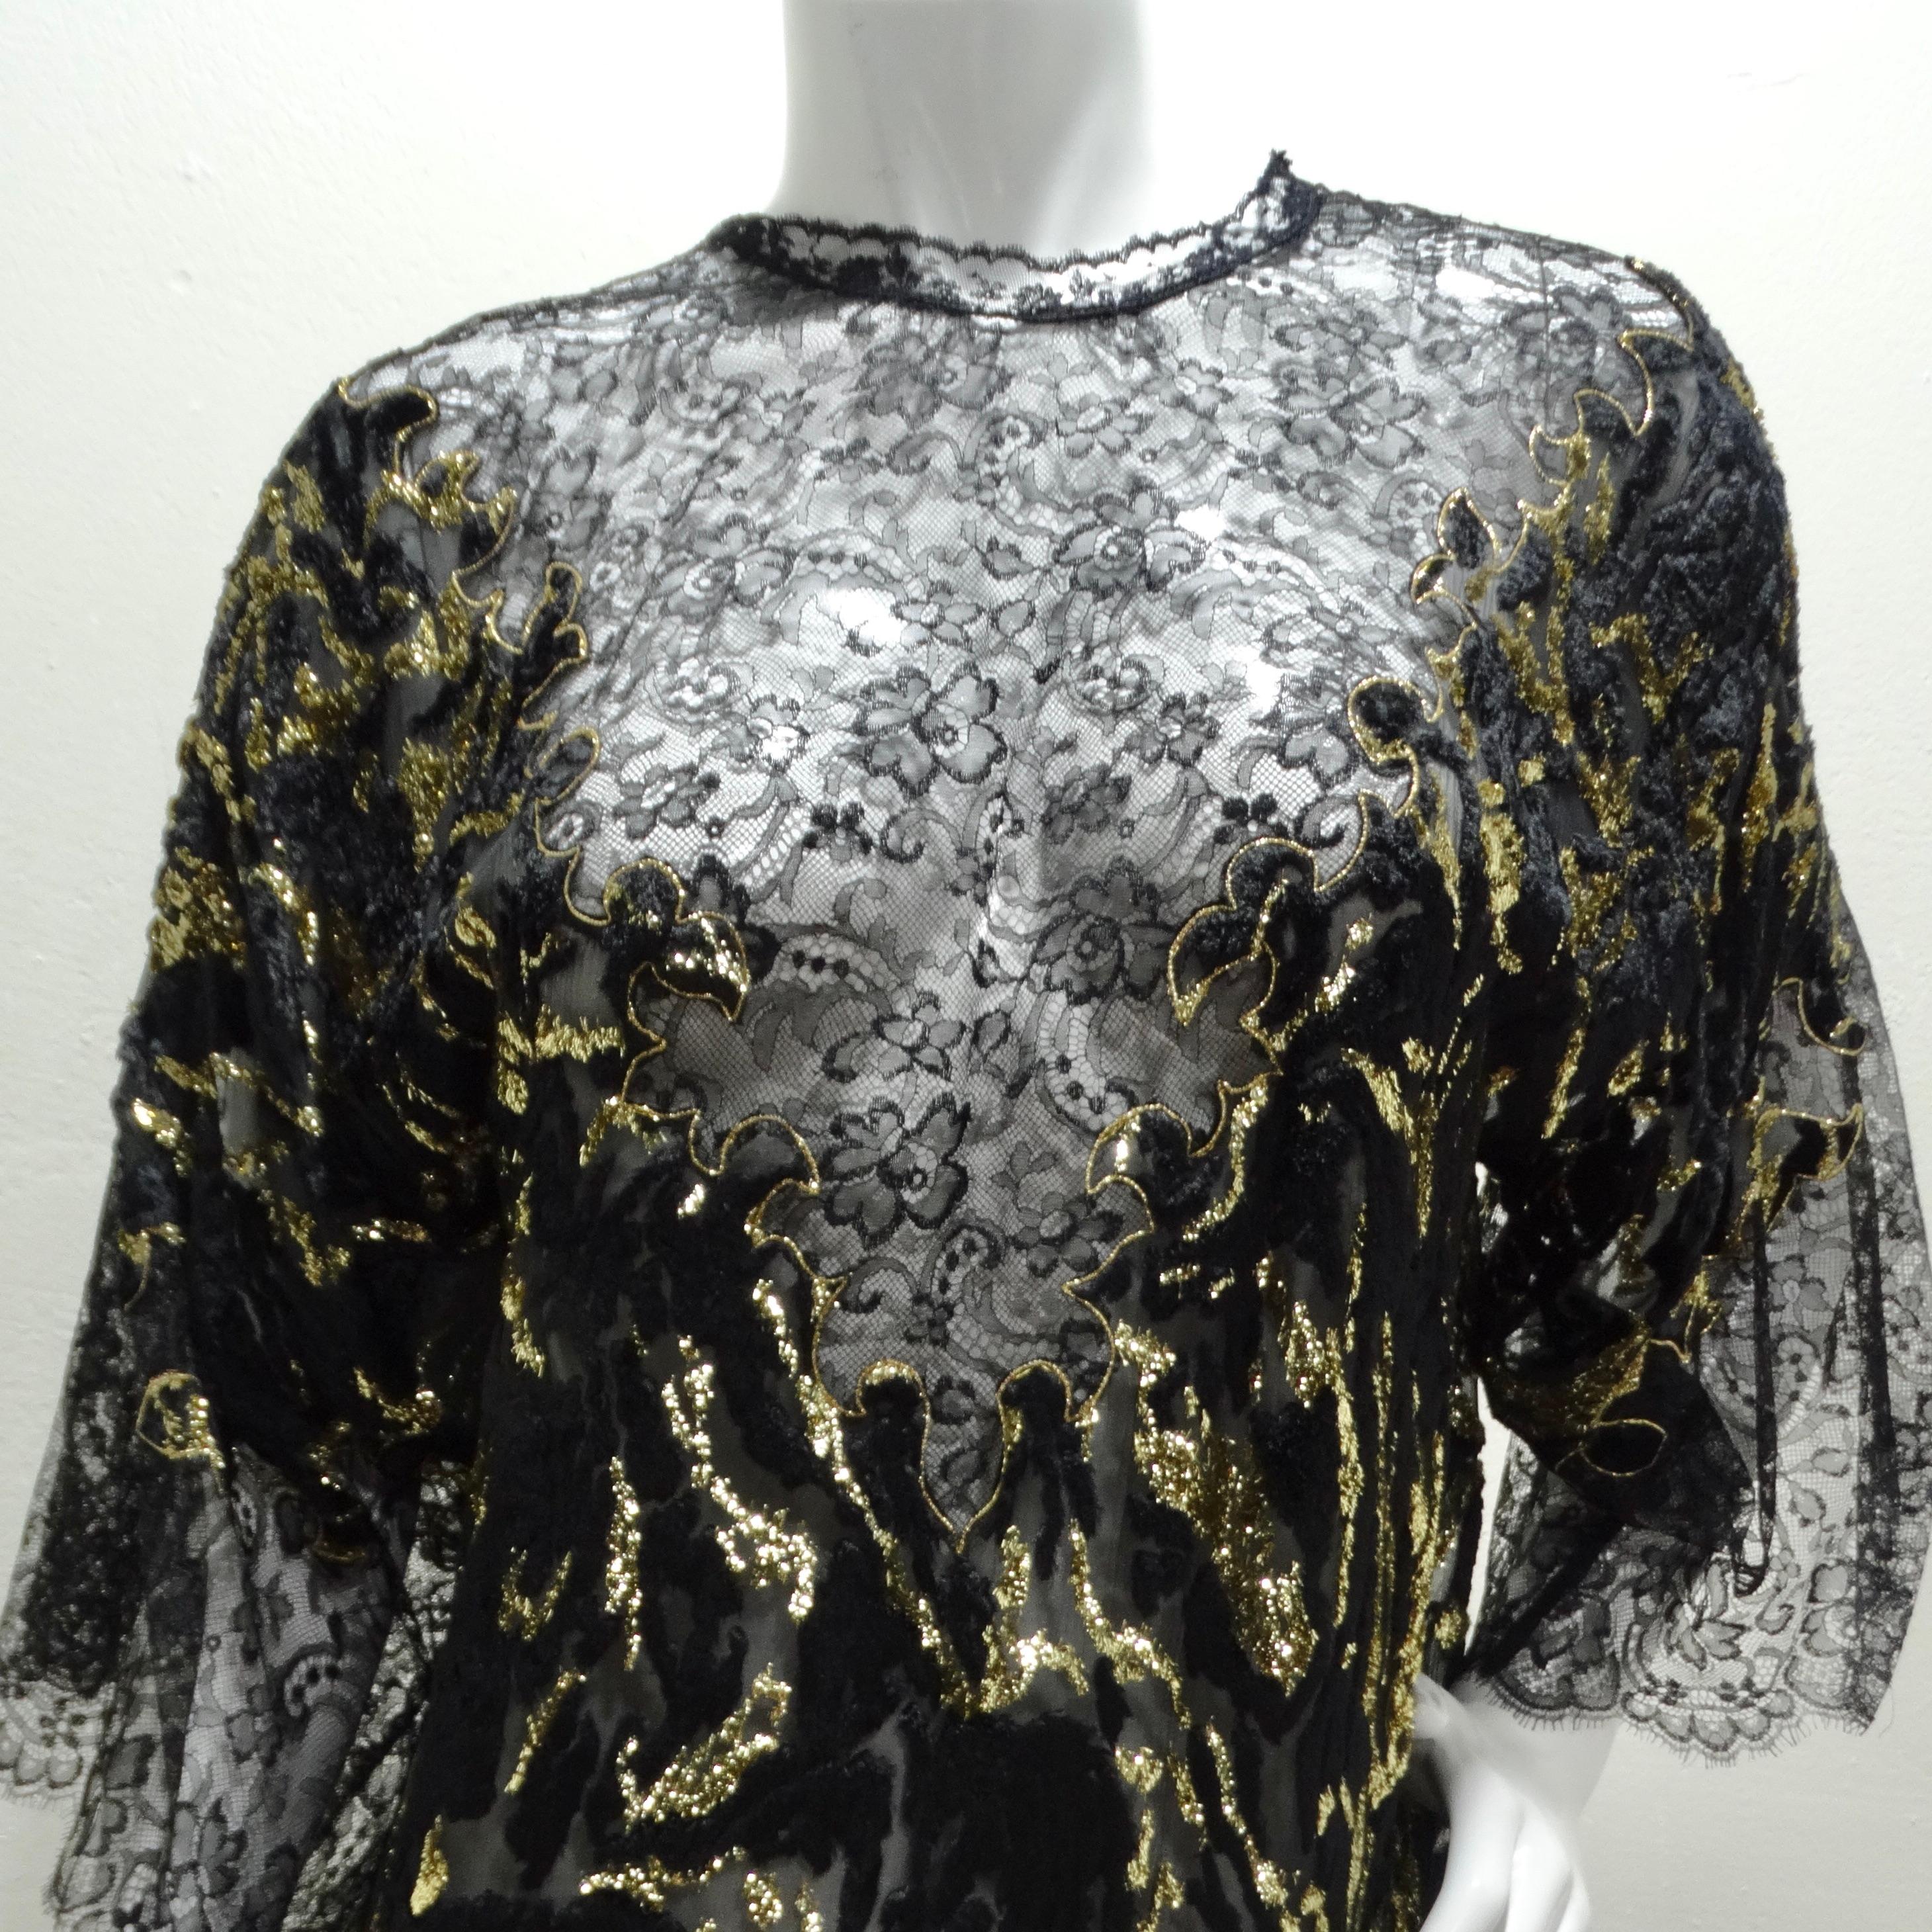 Erleuchten Sie die Nacht mit dem 1980er Black Metallic Gold Velvet Lace Dress! Das Kleid ist aus einem einzigartigen schwarzen Samt-Spitzenstoff gefertigt, der dem Gesamtdesign einen Hauch von Raffinesse und Textur verleiht. Der schwarze Farbton